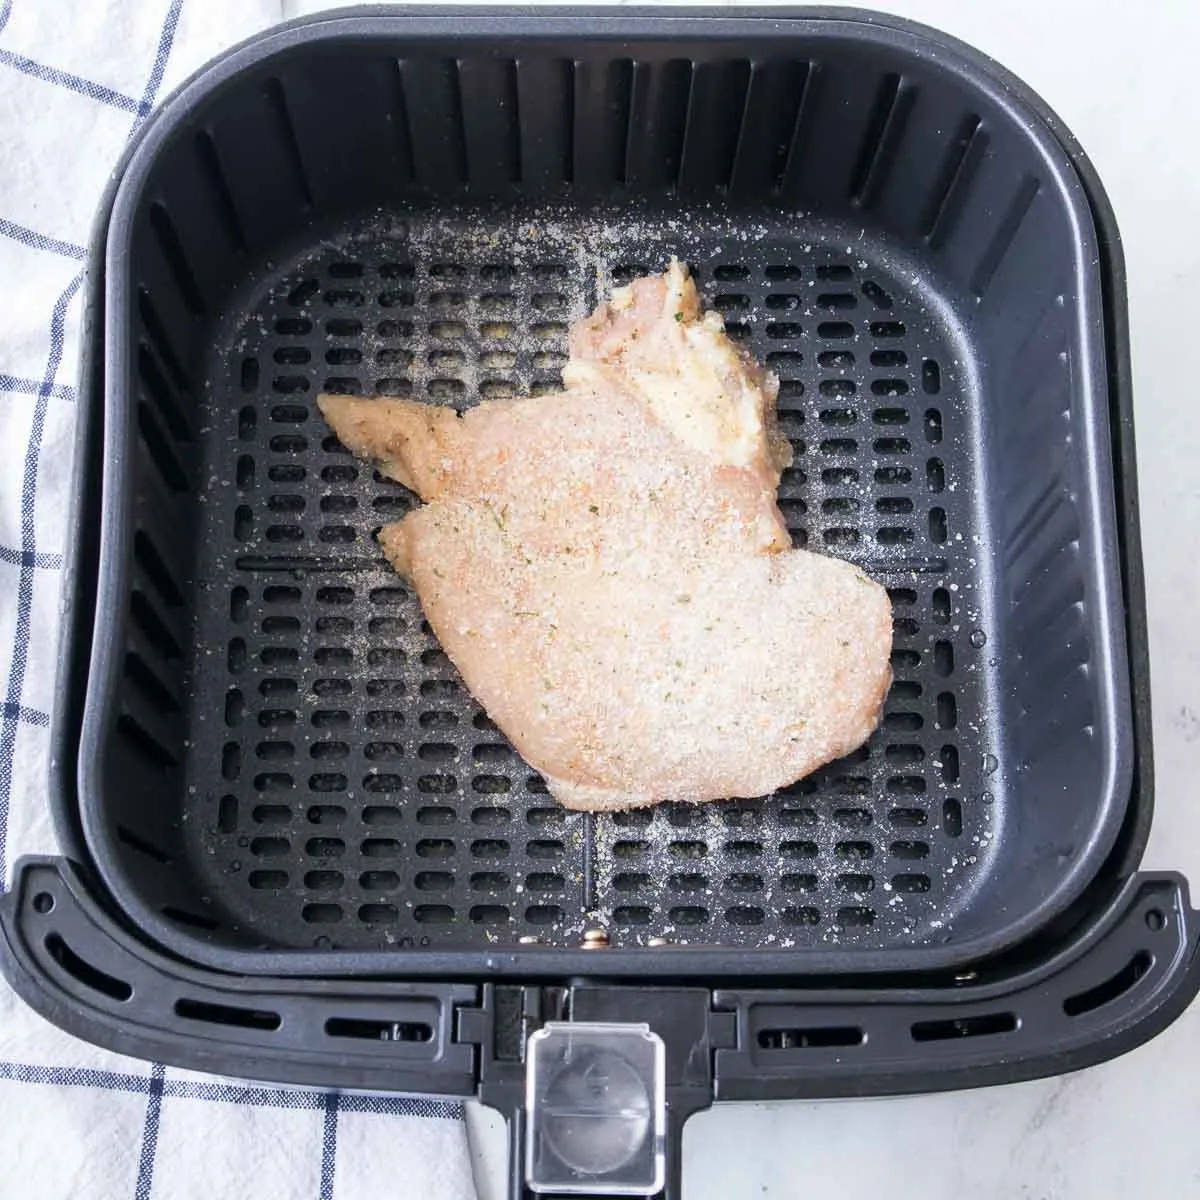 Chicken breast seasoned with garlic salt in an air fryer